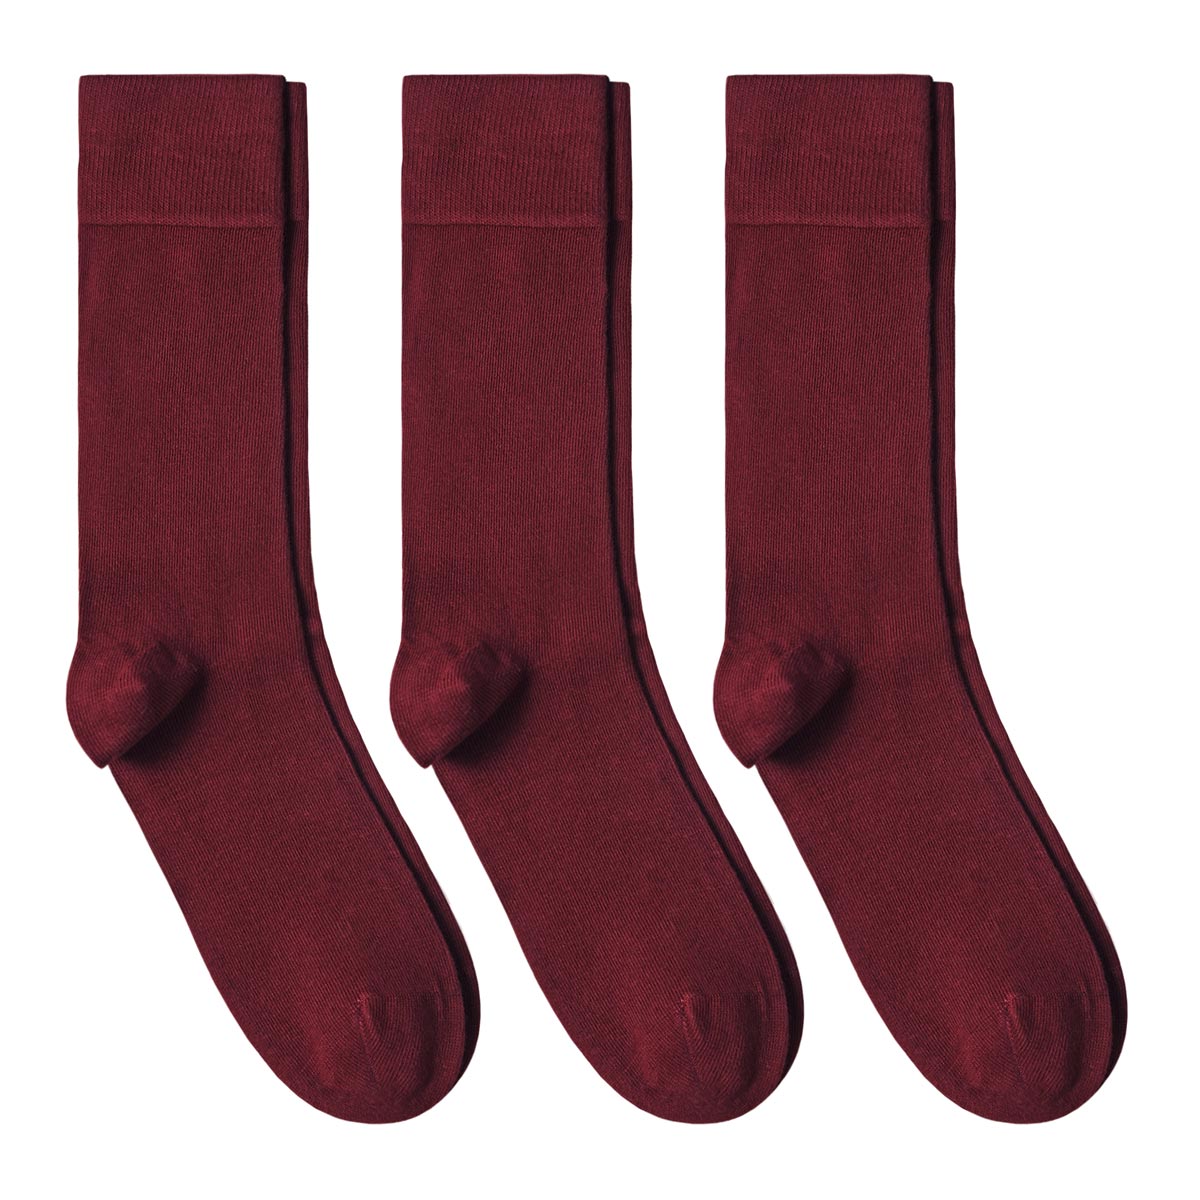 CH-00576_A12-1--_Lot-3-paires-de-chaussettes-homme-rouges-unies